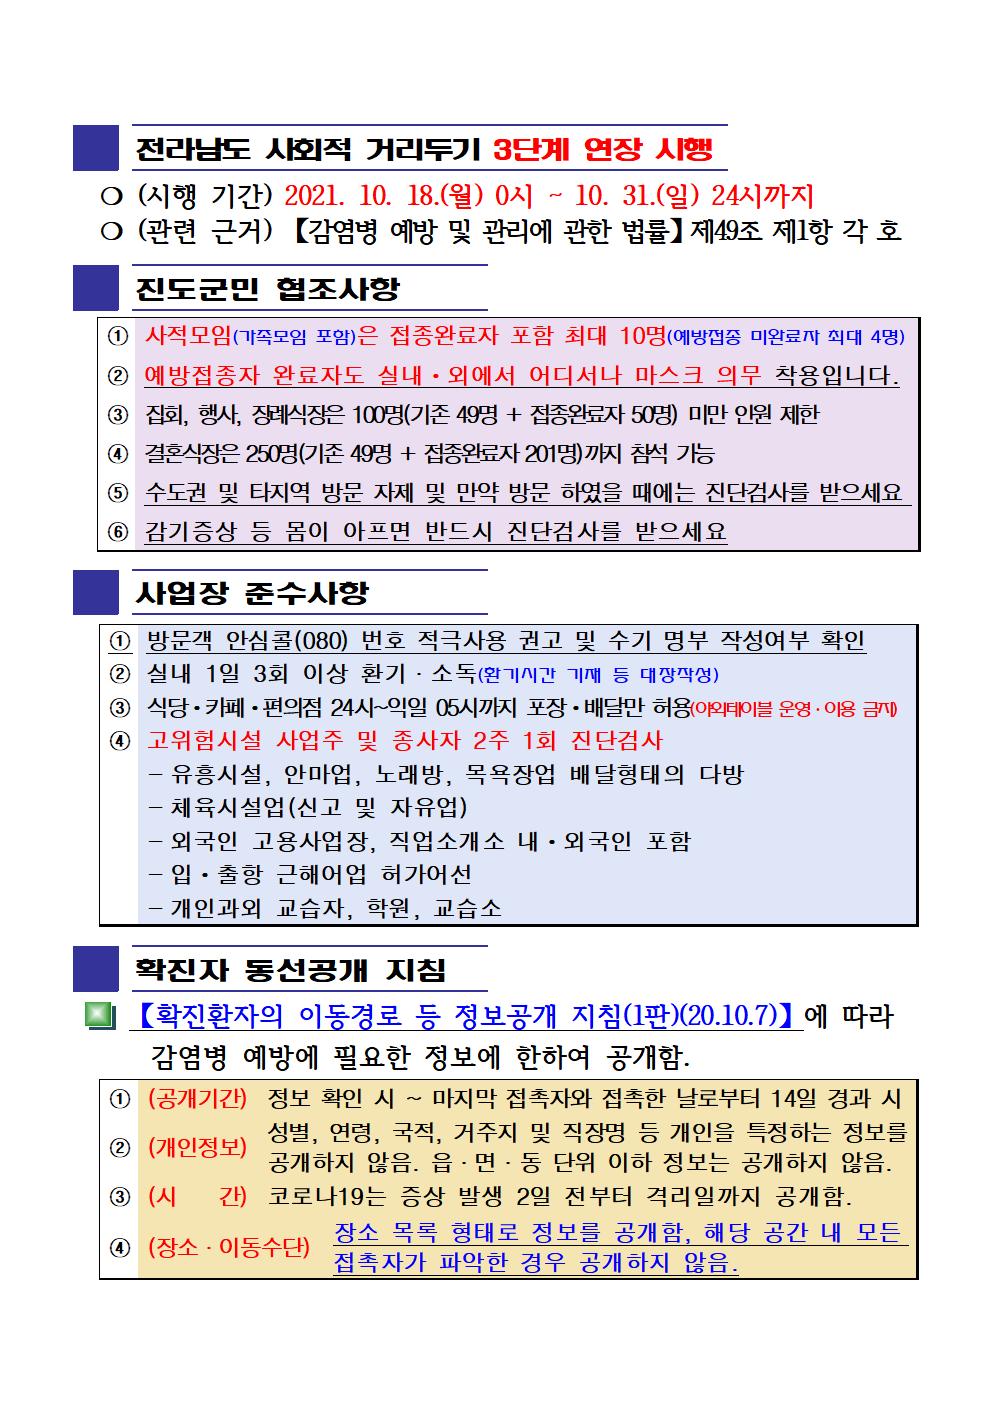 2021년 코로나19 대응 일일상황보고(10월 26일 24시 기준) 첨부#2